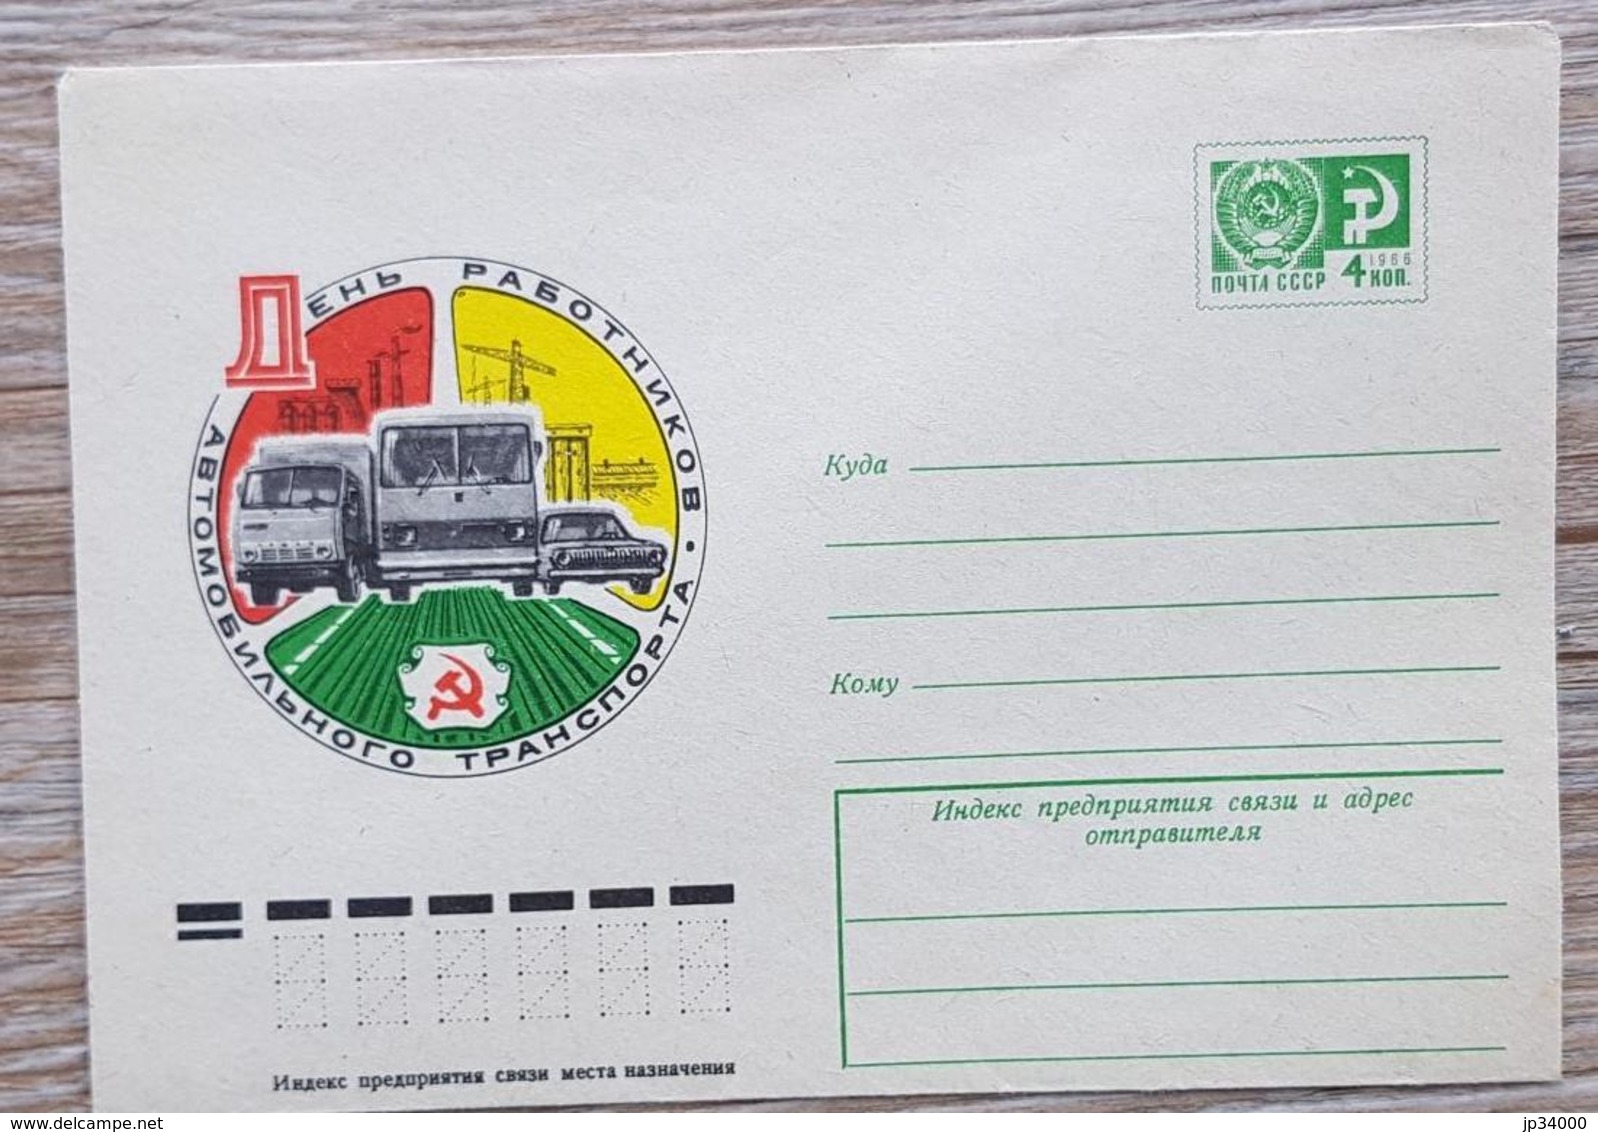 RUSSIE, Camion, Camions, Camionette, Entier Postal Neuf émis En 1976 - Trucks